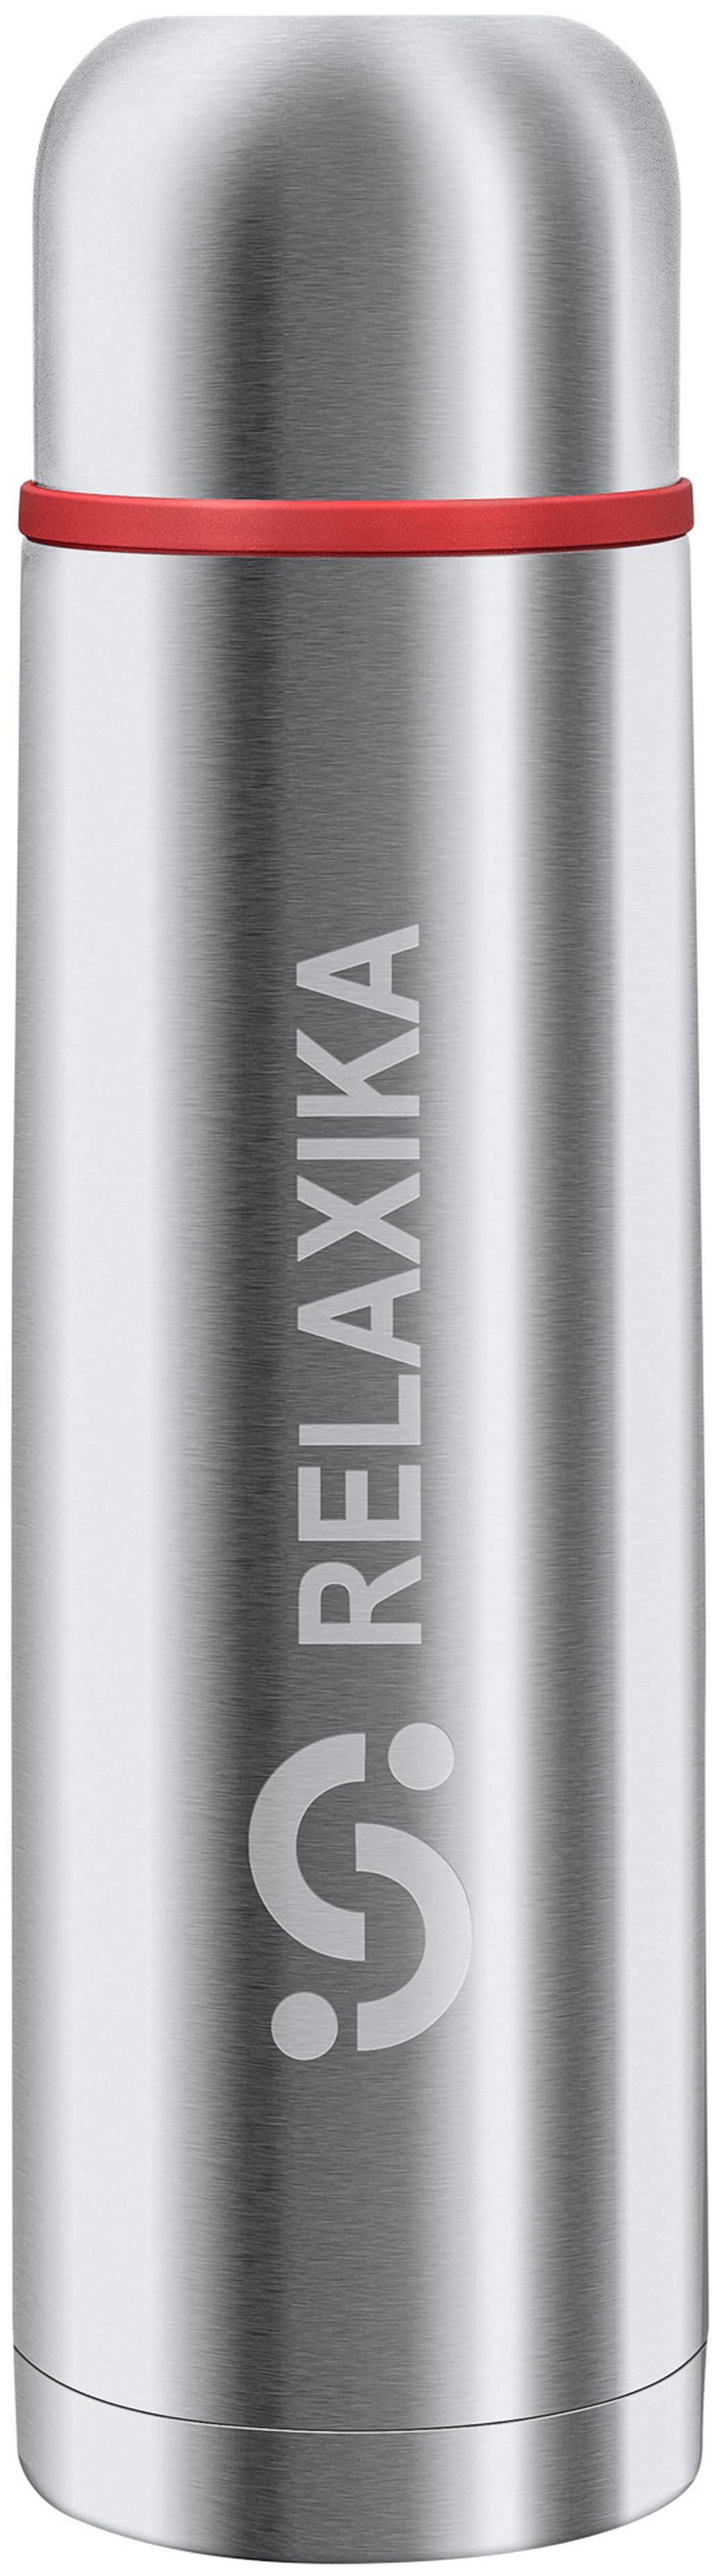 Термос Relaxika 101 (1 литр), стальной, шт R101.1000.1 фото